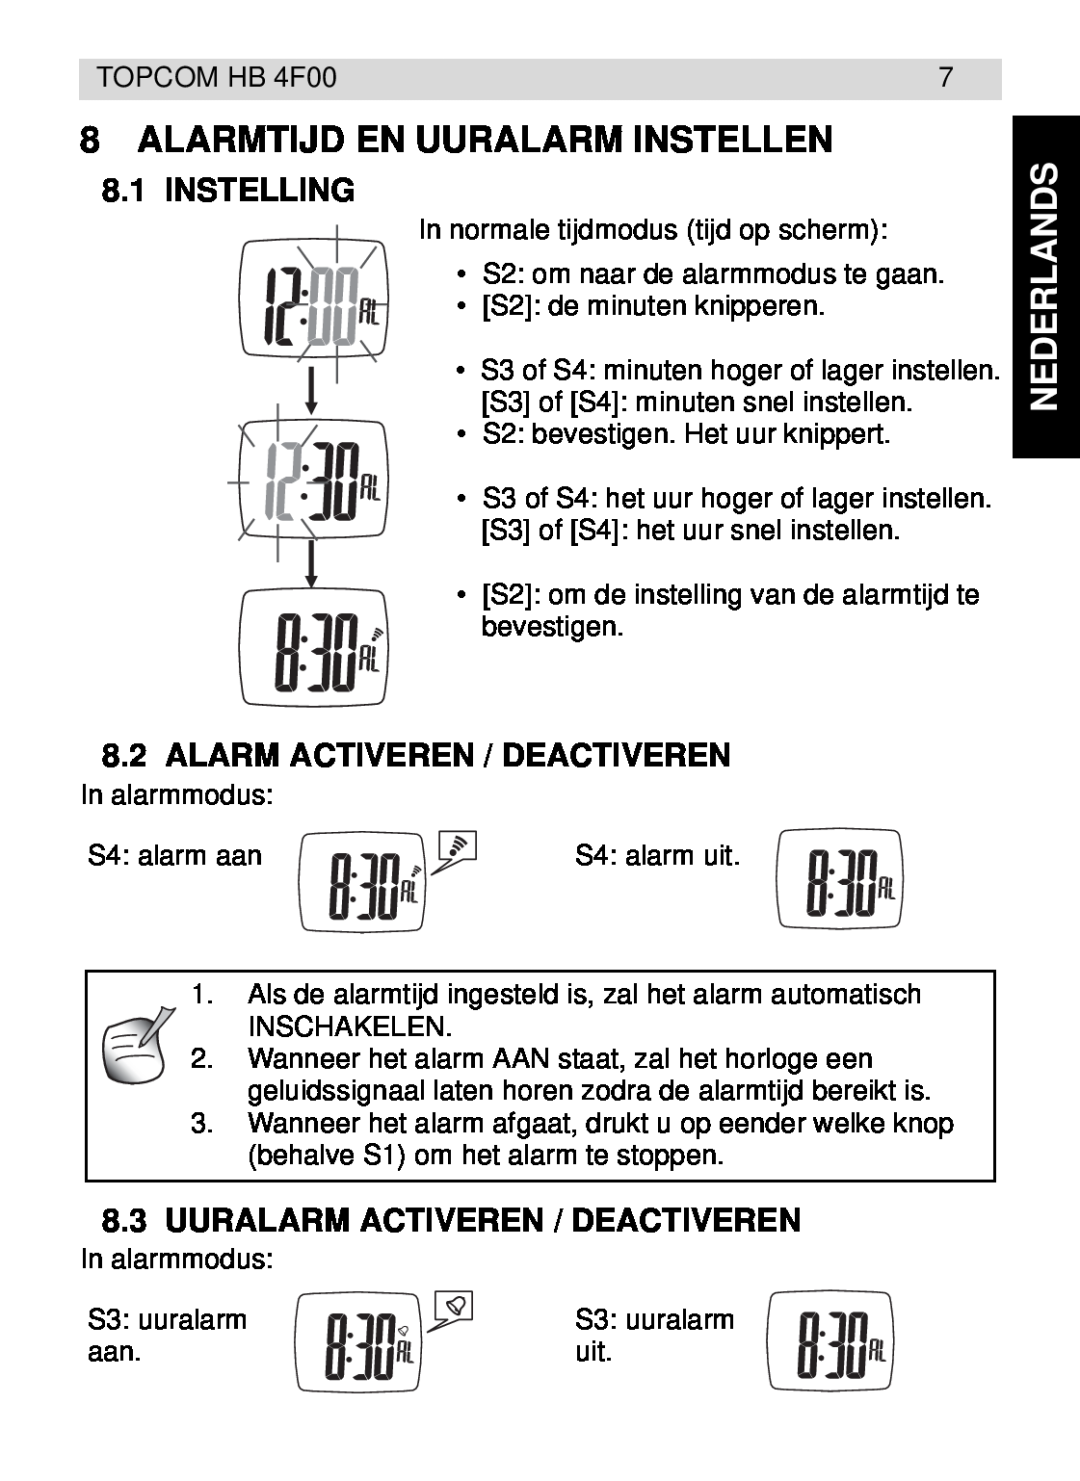 Topcom HB 4F00 manual Alarmtijd En Uuralarm Instellen, Instelling, Alarm Activeren / Deactiveren, Nederlands 